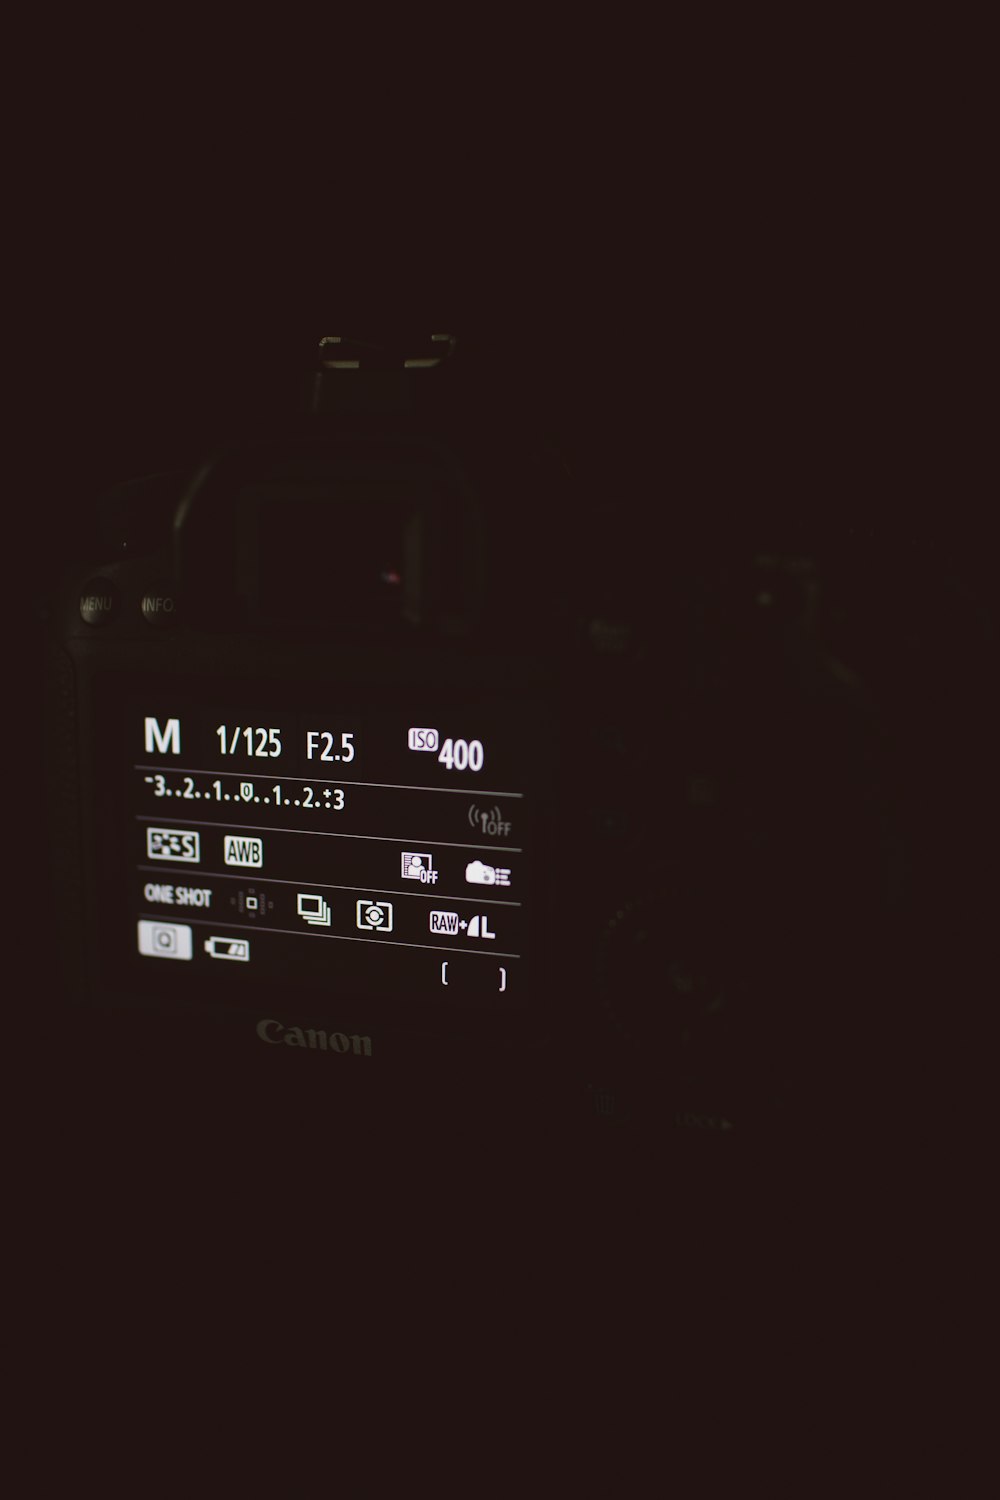 cámara Canon DSLR negra encendida